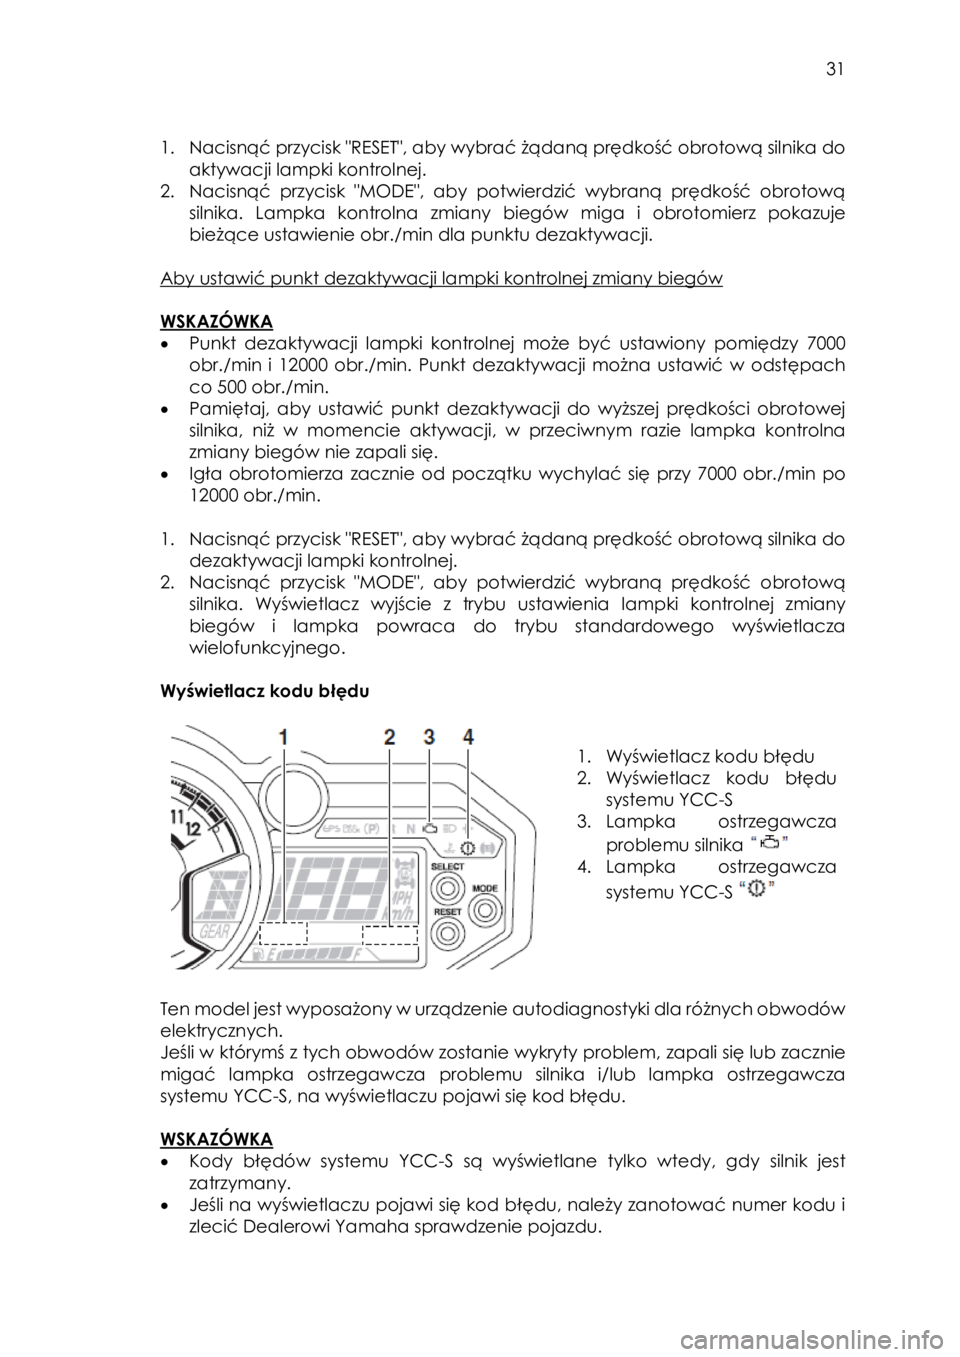 YAMAHA YXZ1000R SS 2017  Instrukcja obsługi (in Polish)  31 
 
1. Nacisnąć przycisk "RESET", aby wybrać żądaną prędkość obrotową silnika do 
aktywacji lampki kontrolnej.  
2. Nacisnąć  przycisk  "MODE",  aby  potwierdzić  wybra